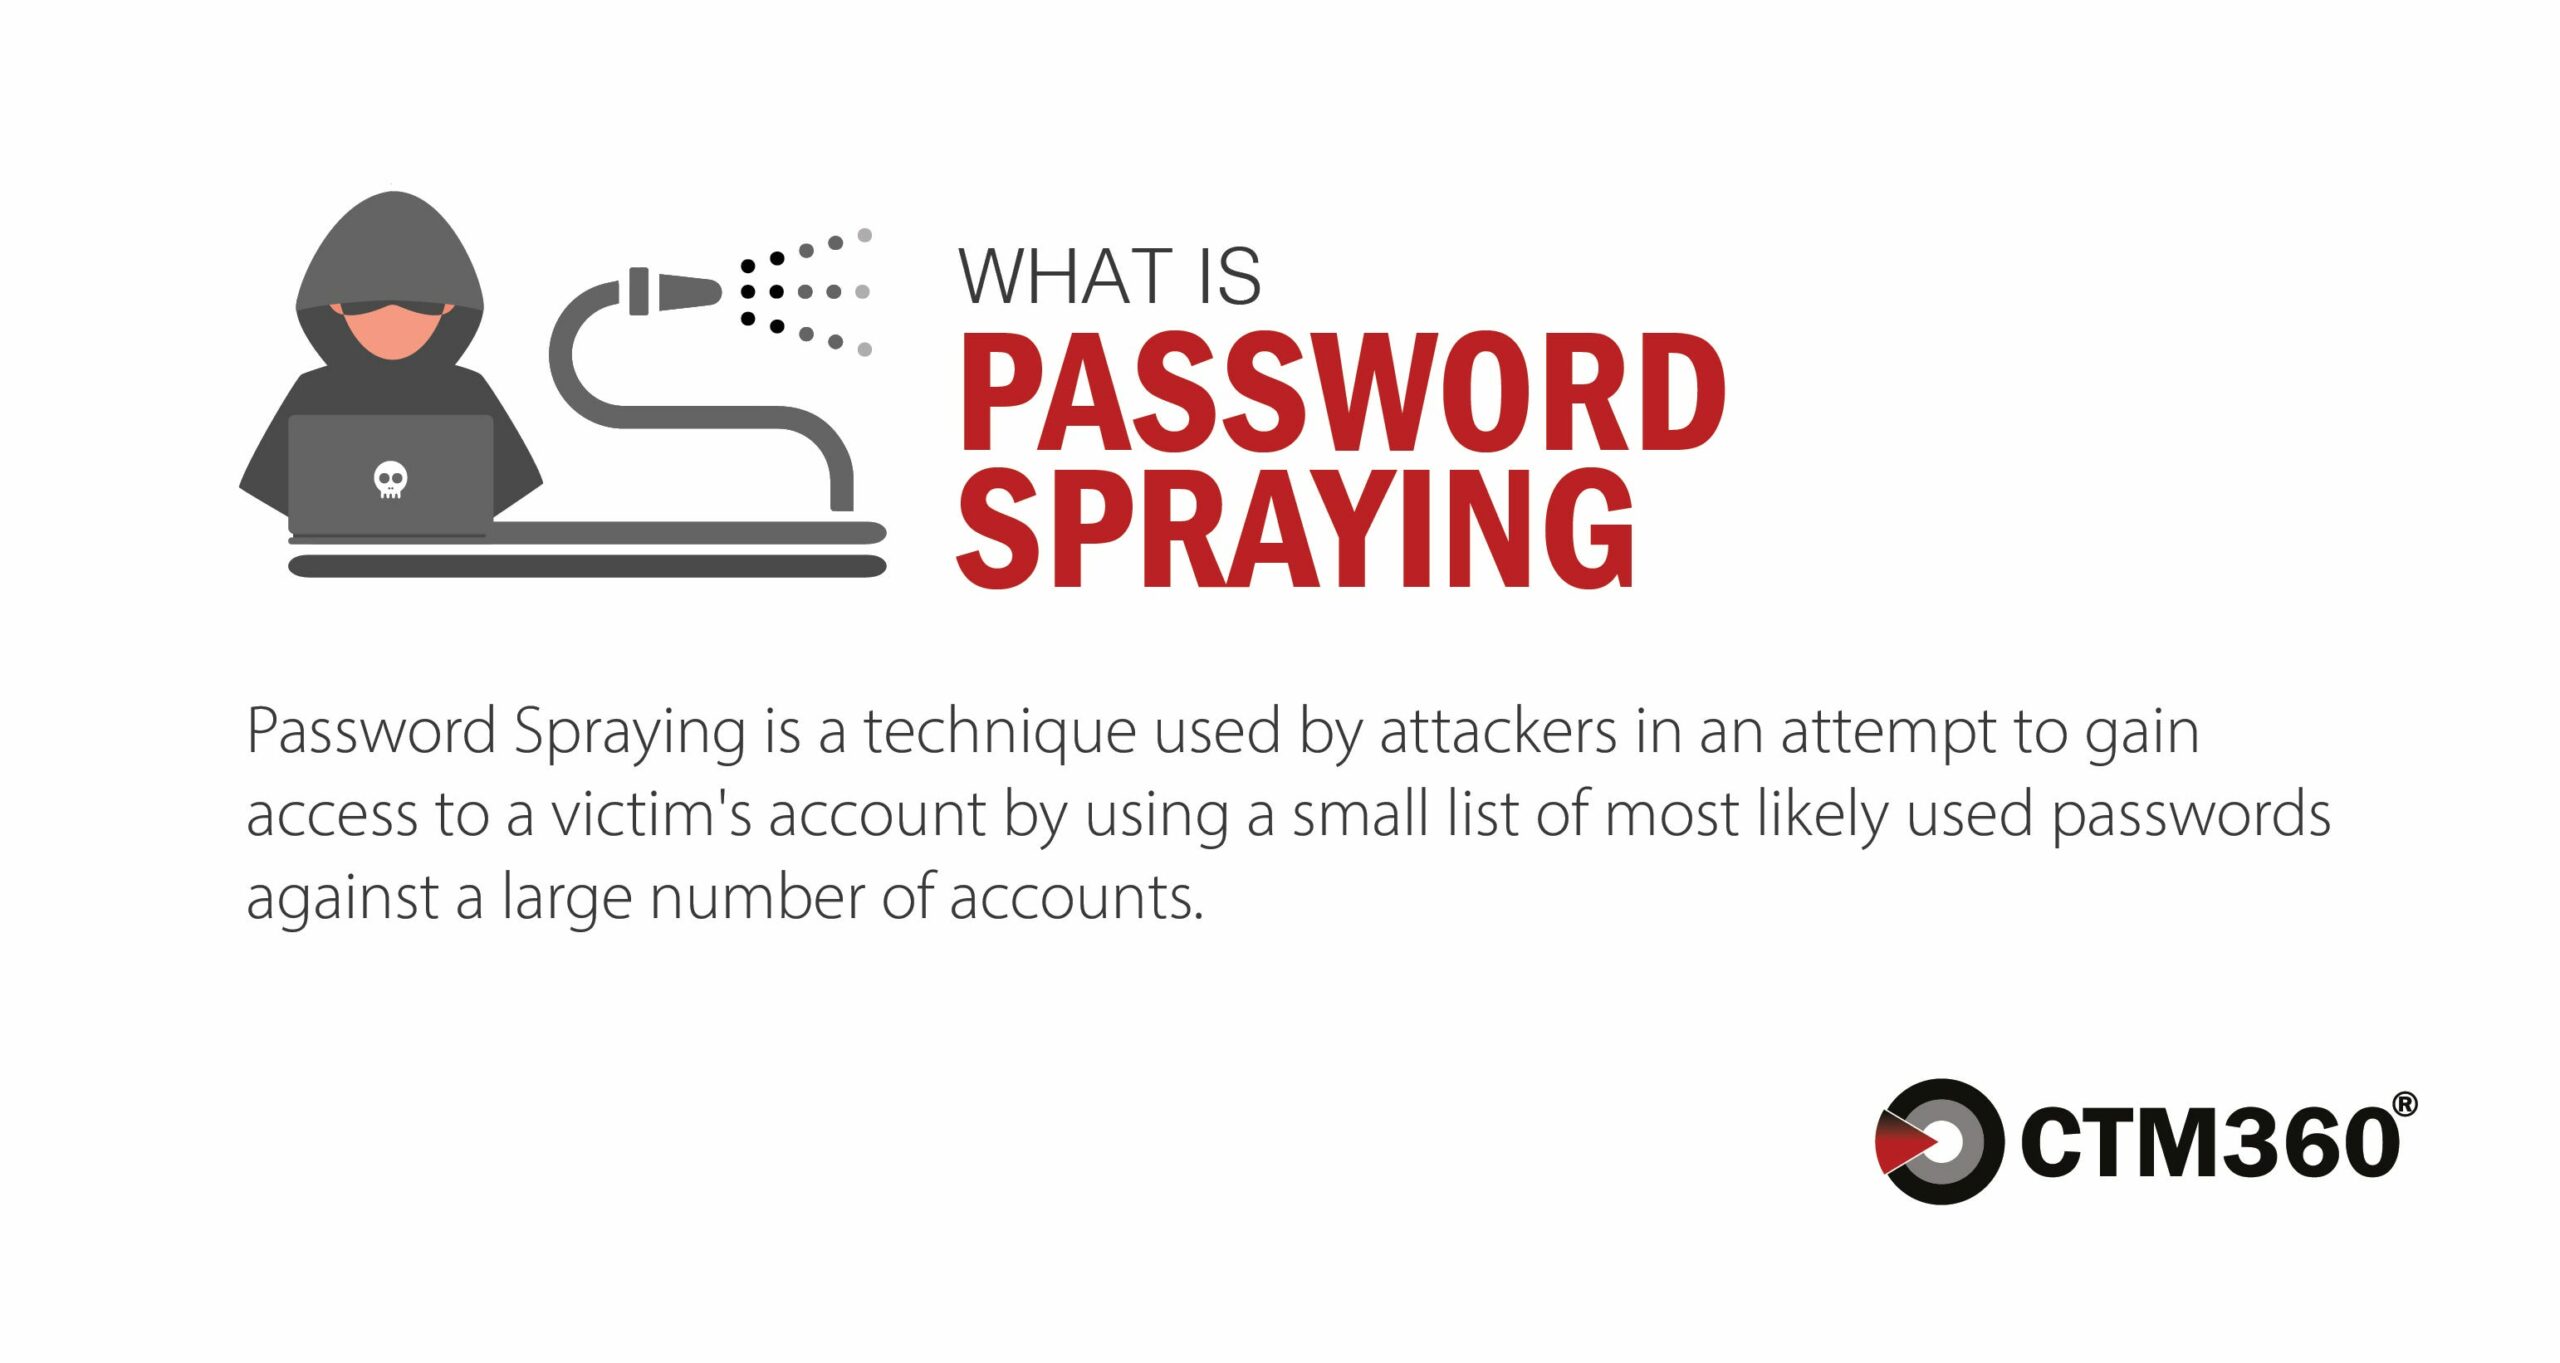 Password spraying